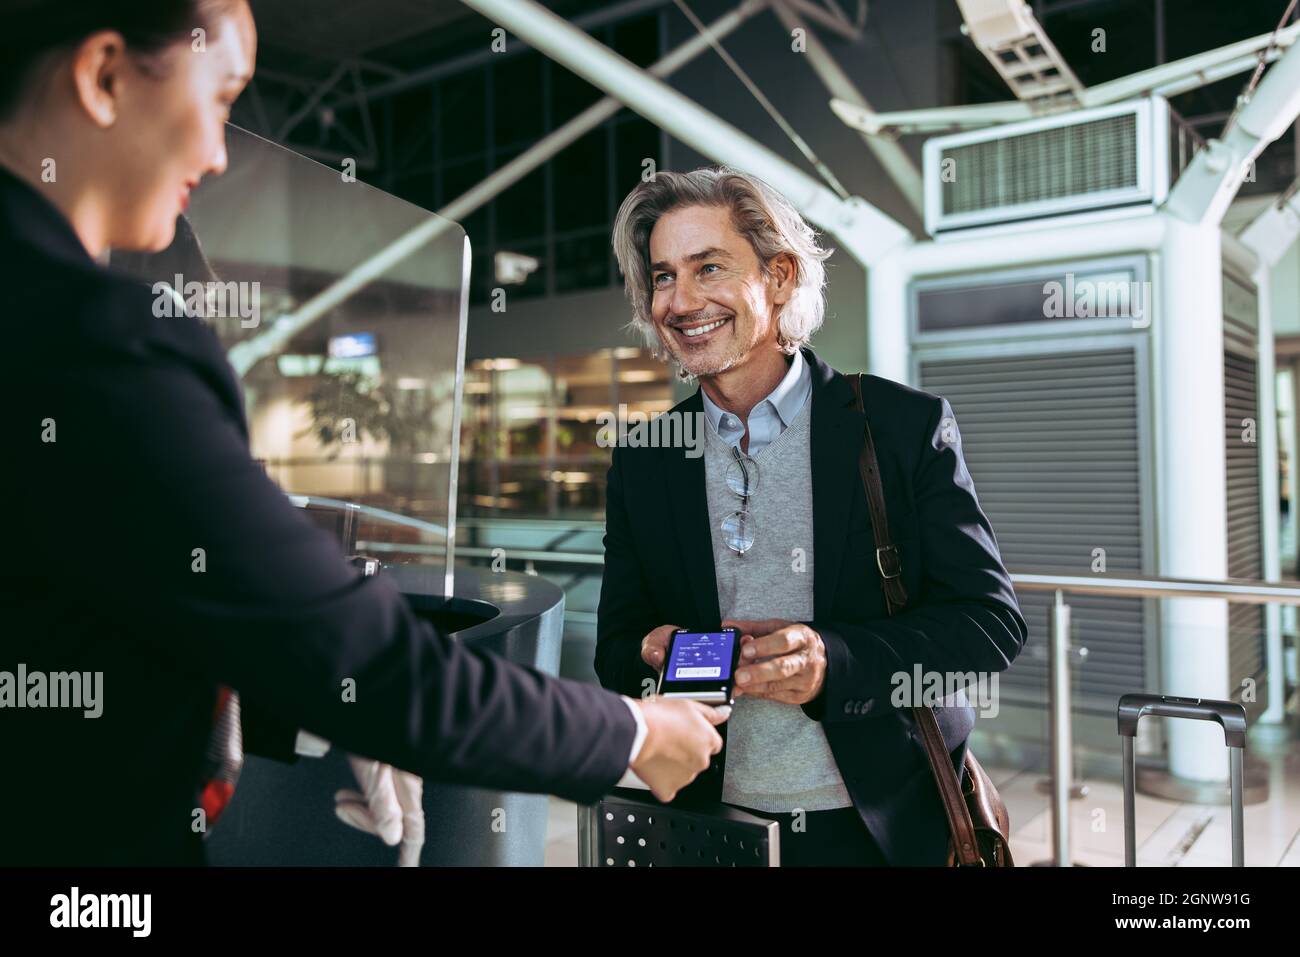 Geschäftsmann zeigt dem Flugbegleiter am Check-in-Schalter am Flughafen die  elektronische Bordkarte. Lächelnder männlicher Reisender, der am Flughafen  einen digitalen Check-in macht Stockfotografie - Alamy